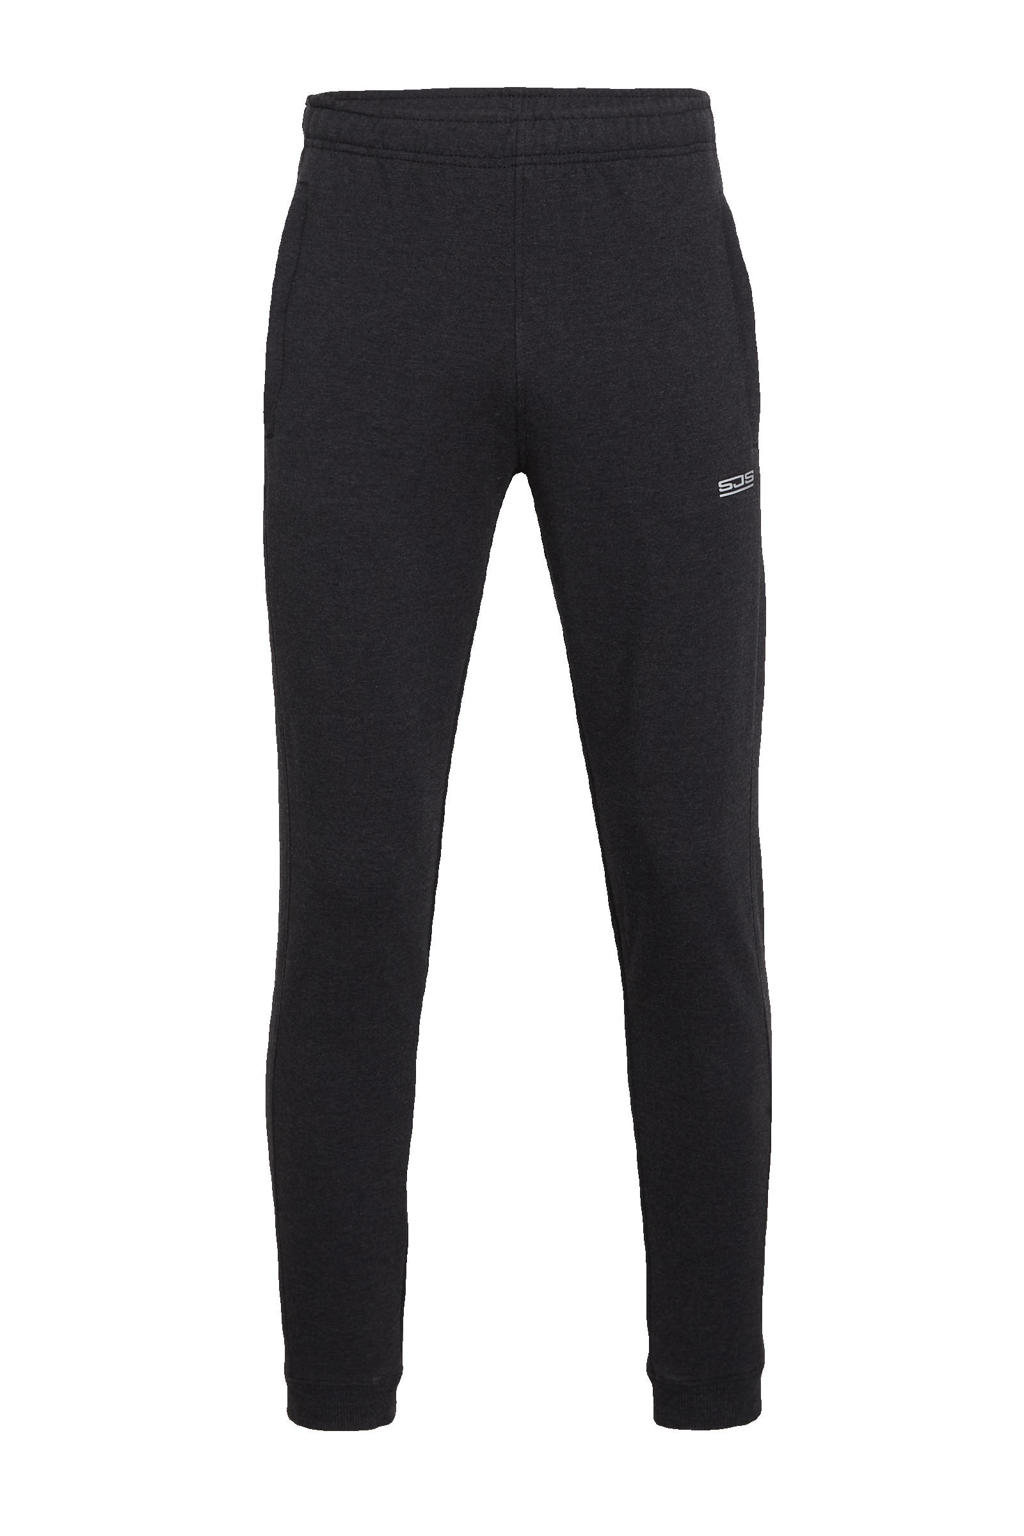 Grijze heren Sjeng Sports joggingbroek Break melange van polyester met regular fit, regular waist en logo dessin